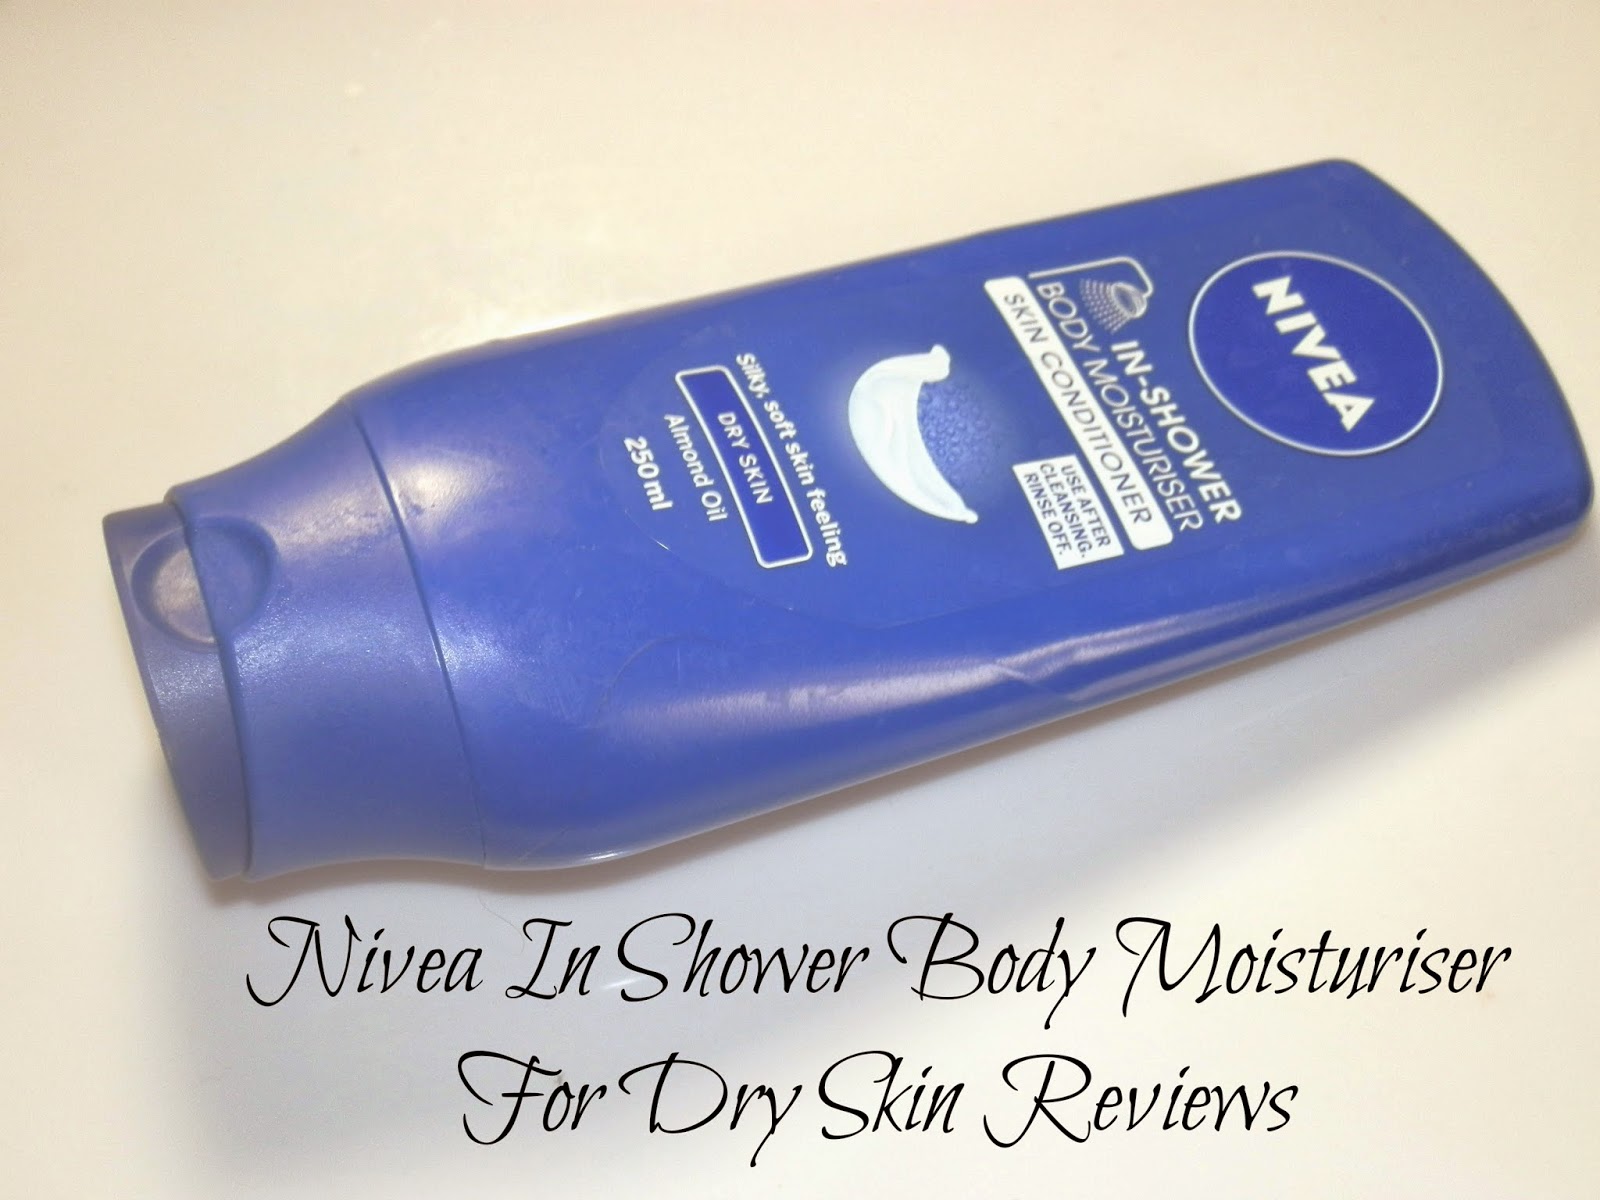 Nivea In Shower Body Moisturiser For Dry Skin Reviews 